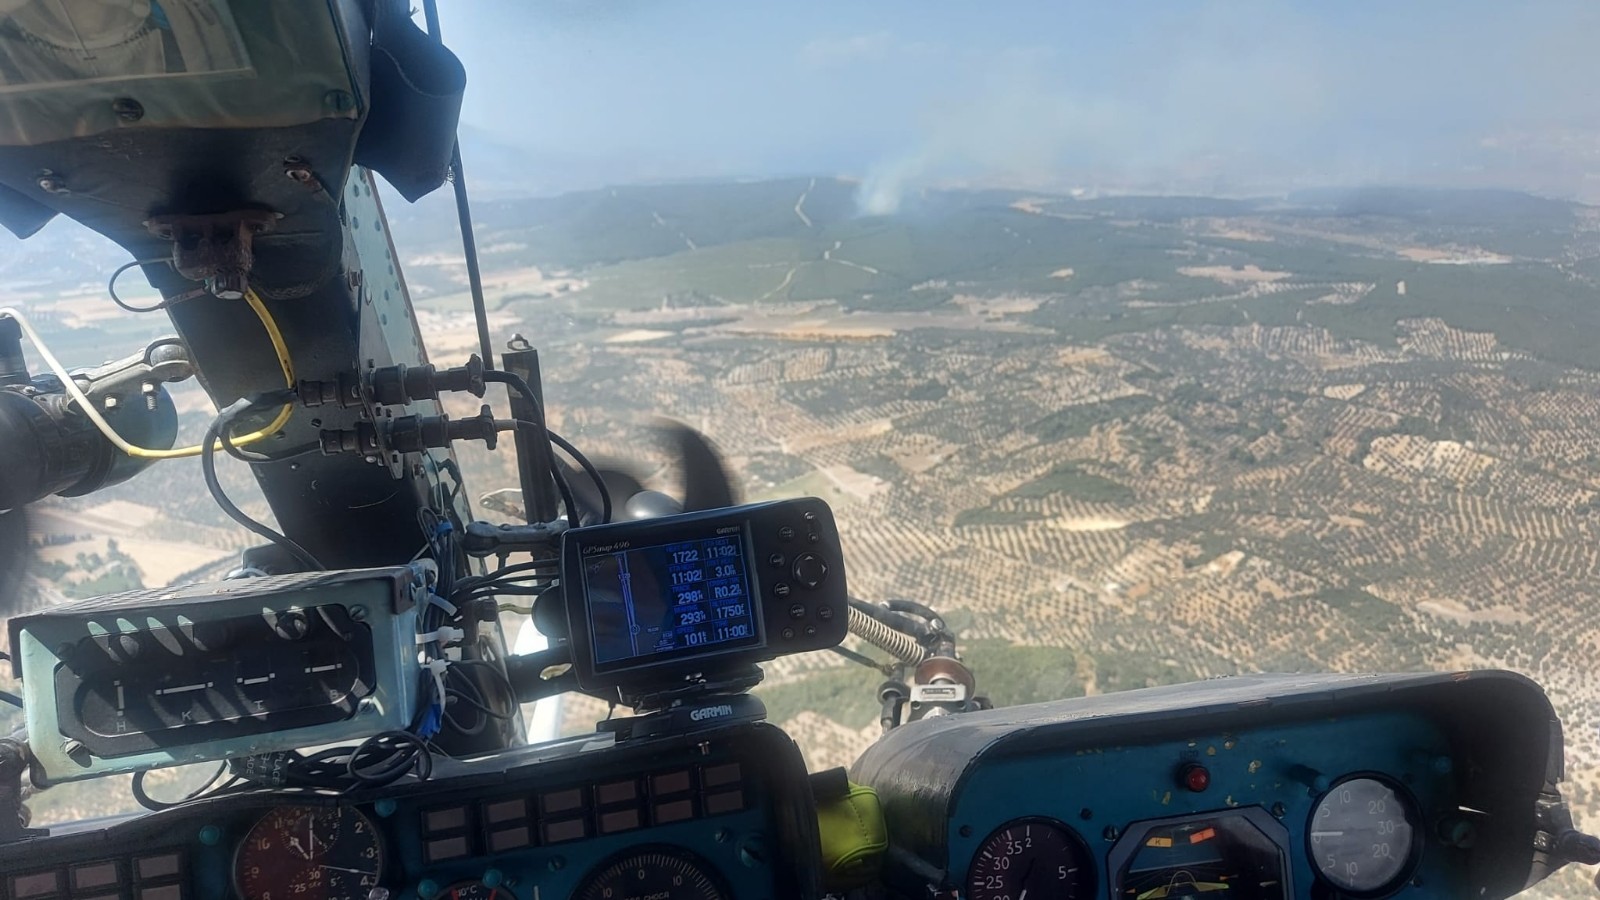 İzmir’in Foça ilçesindeki ormanlık alanda yangın çıktı. Bölgeye, 5 helikopter, 1 uçak, 20 arazözün sevk edildiği belirtildi.